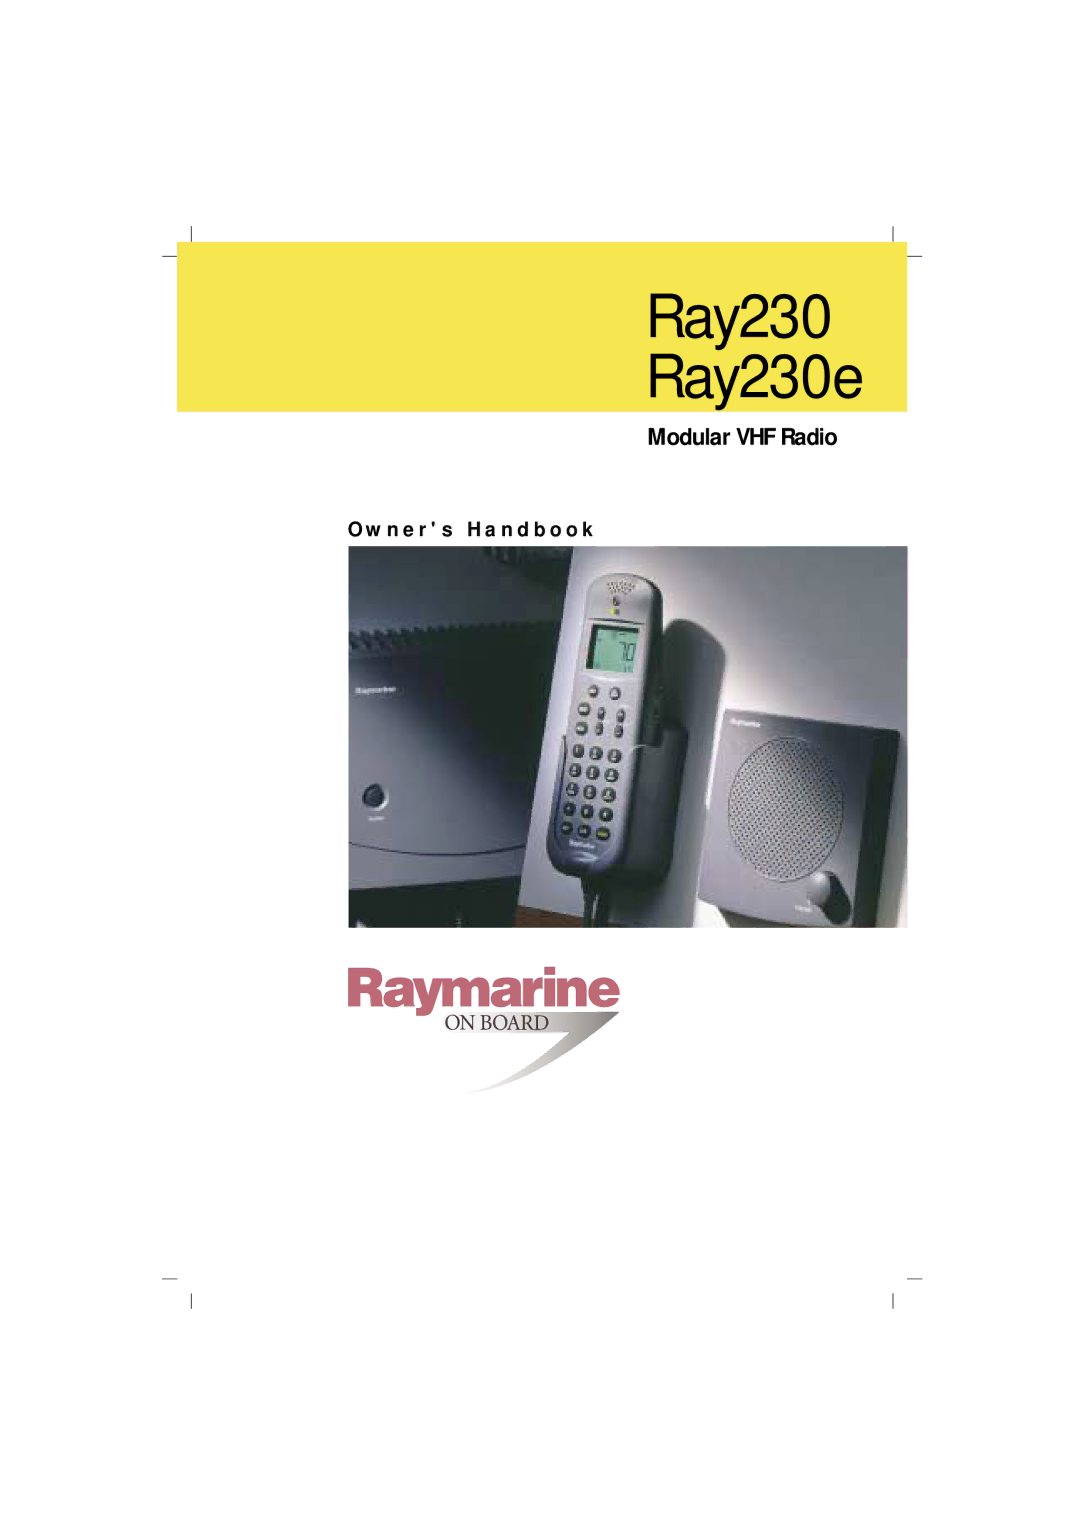 Raymarine manual Ray230 Ray230e 